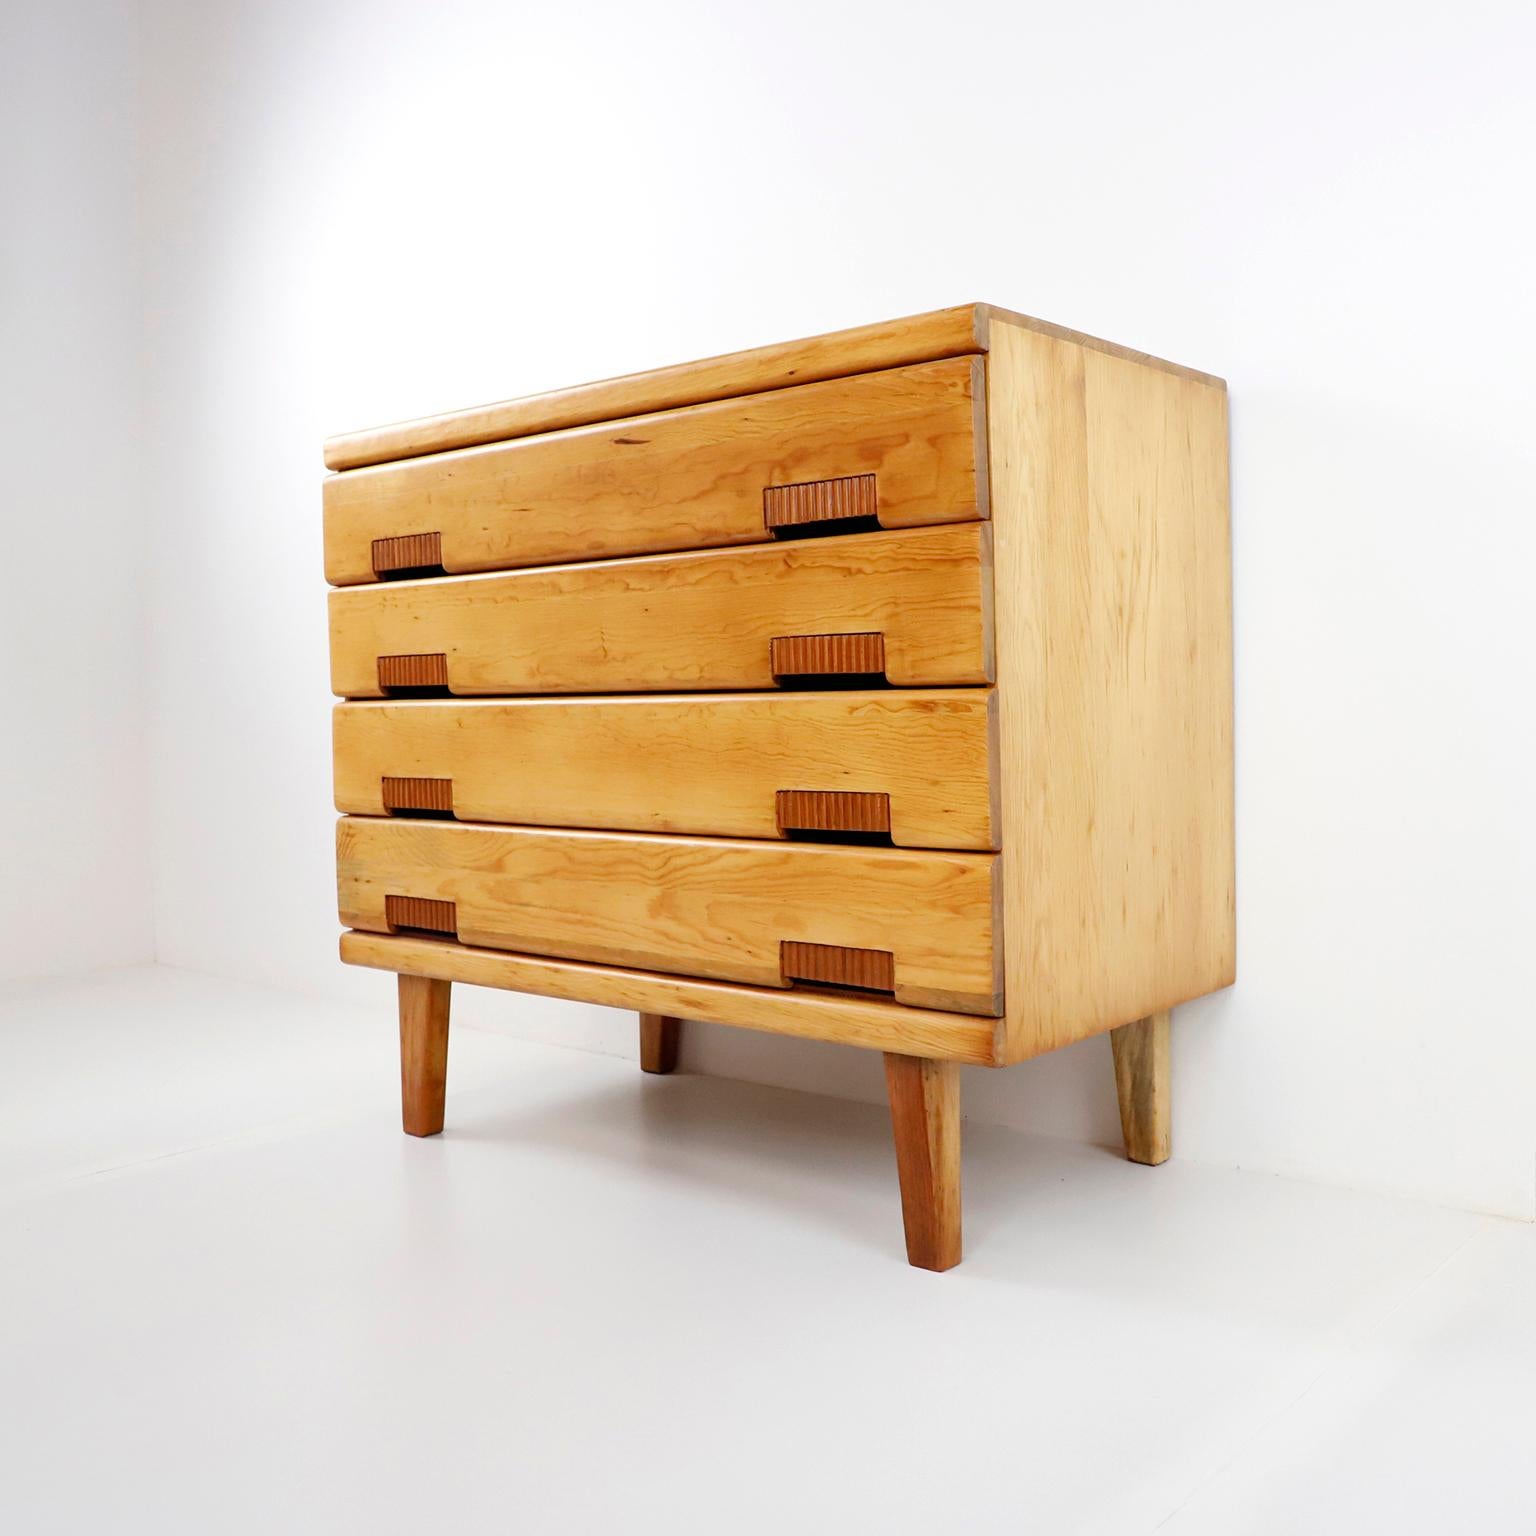 Wir bieten diese seltene originale Domus-Schublade von Michael Van Beuren aus Kiefernholz an. Entworfen von dem amerikanischen Bauhaus-Designer Michael Van Beuren in Mexiko, um 1950, handgefertigt aus massivem Kiefernholz, wurde diese Schublade